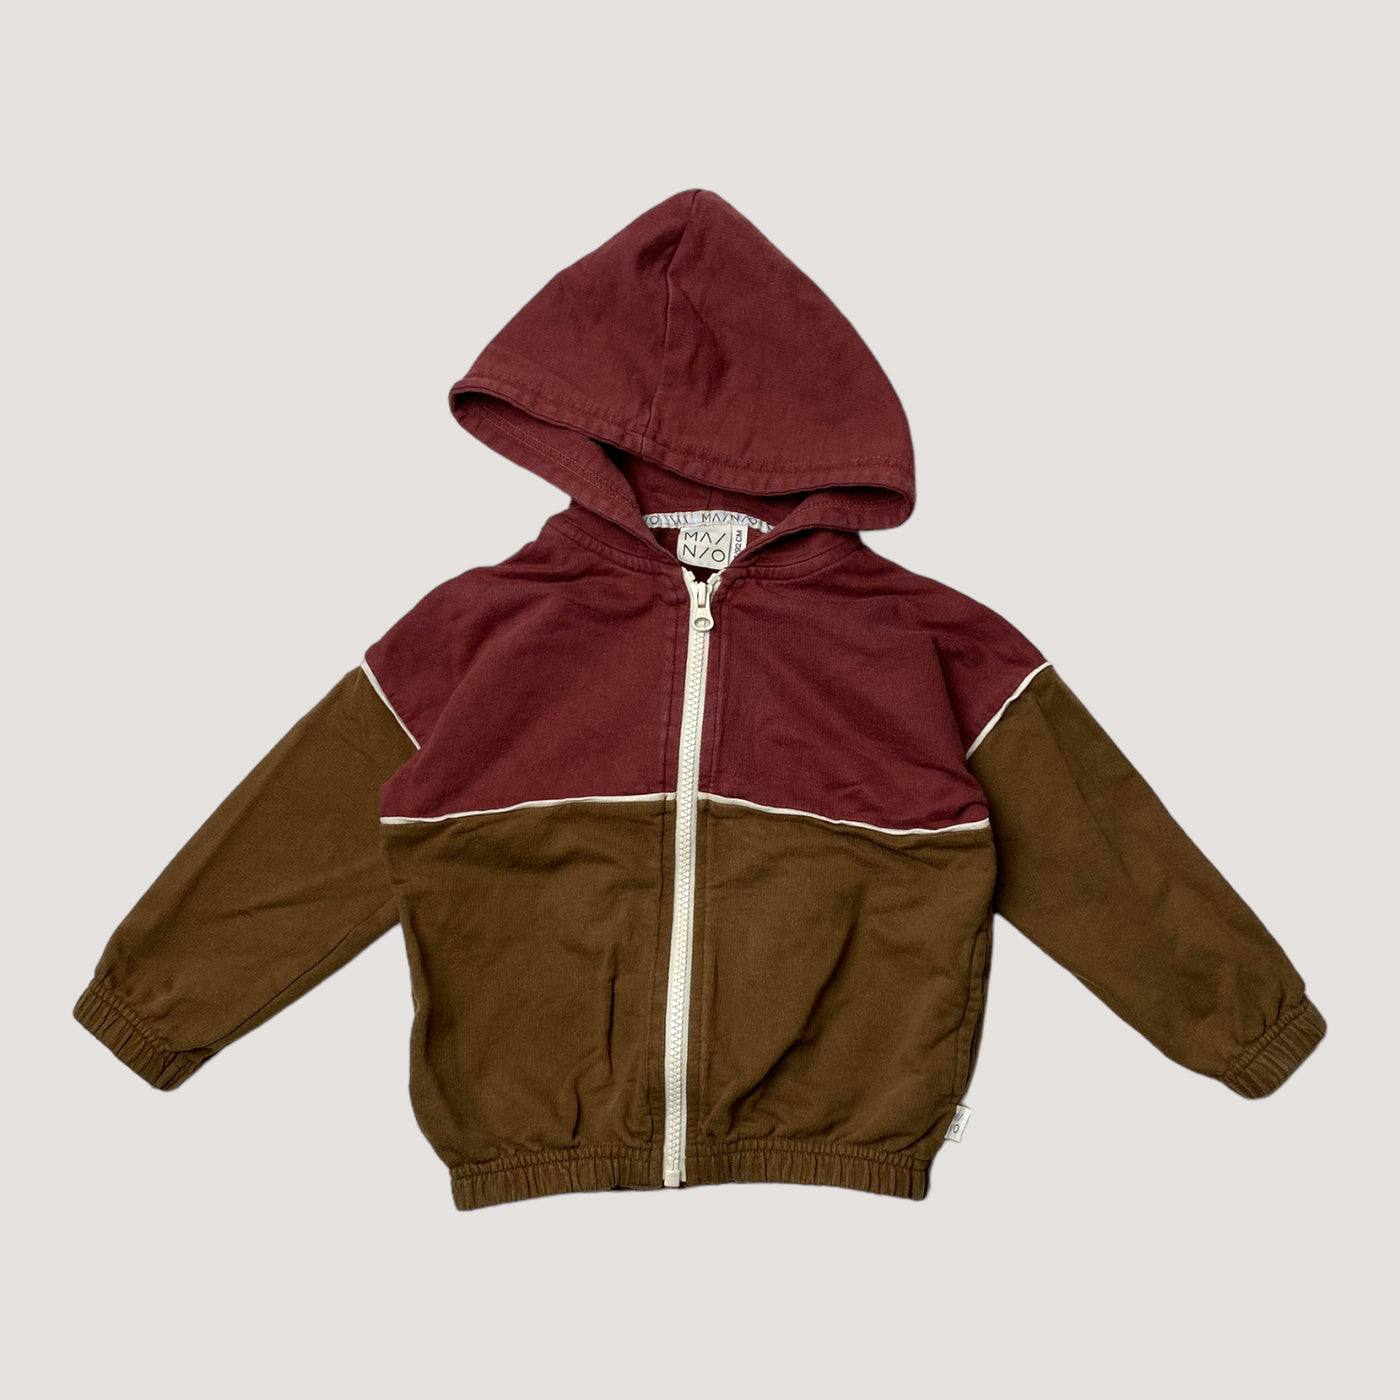 Mainio zipper sweatshirt, dark red / golden brown | 86/92cm